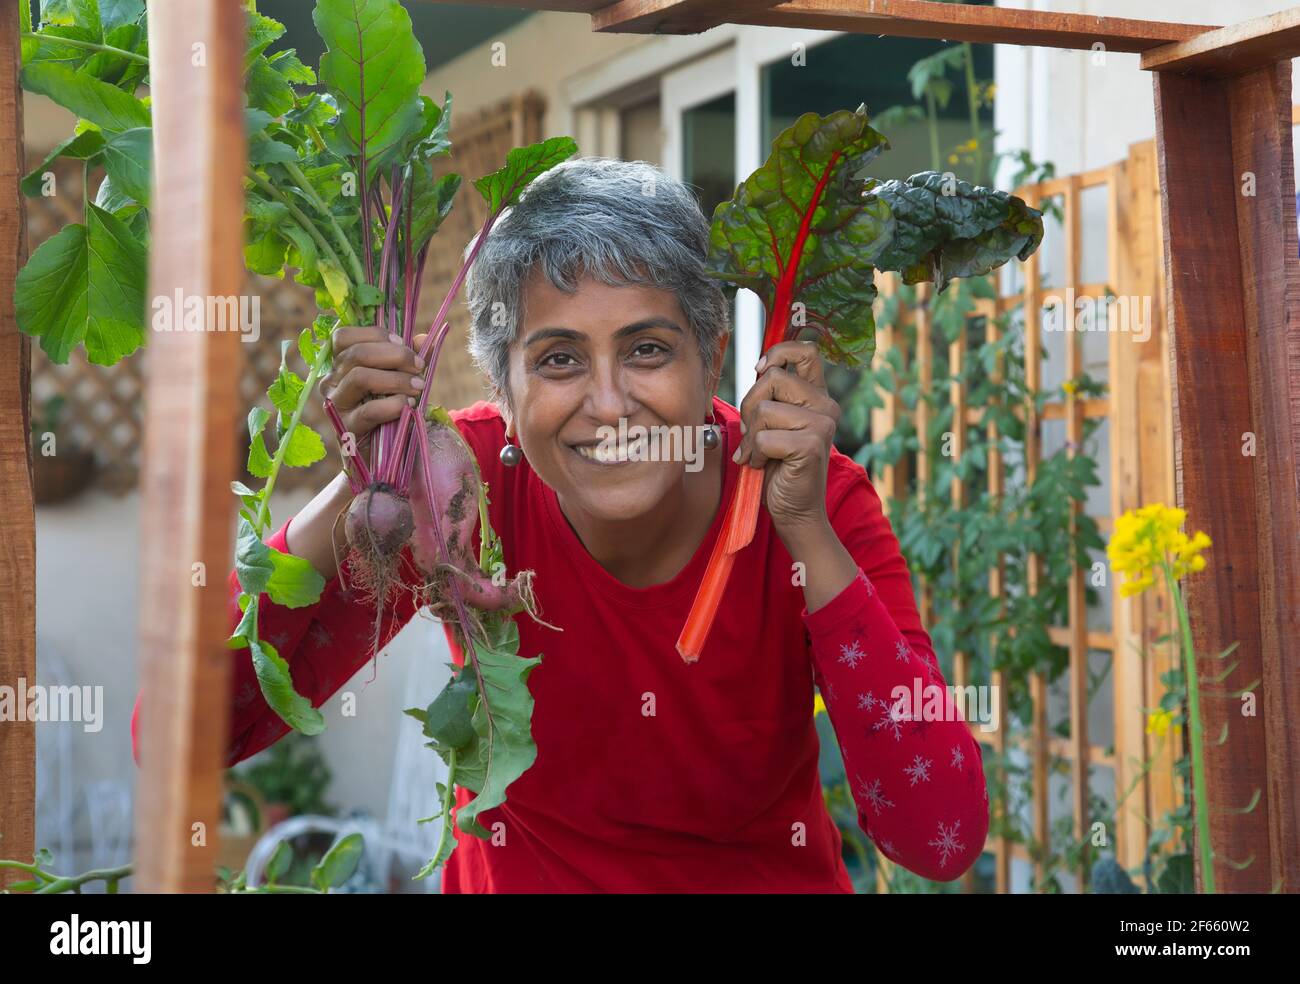 Porträt eines städtischen Bauern mit frischen grünen Salatblättern. Stockfoto